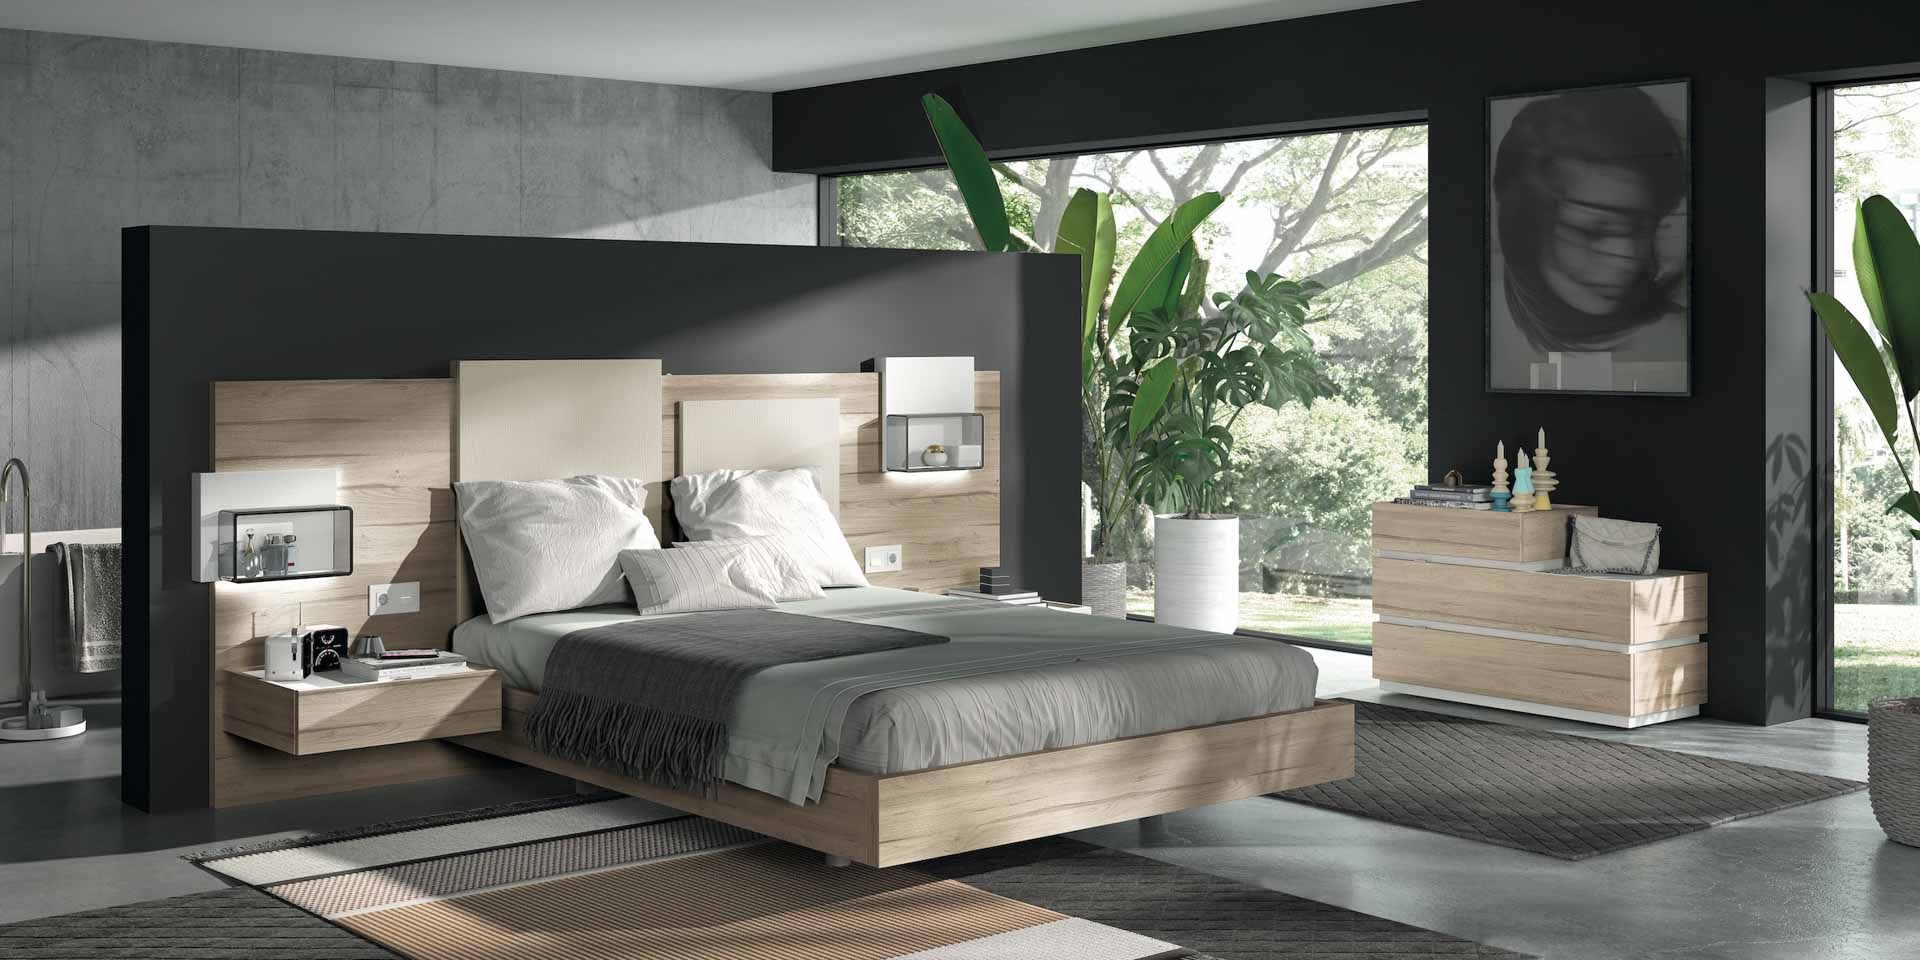 Diseño de mobiliario de dormitorio 45